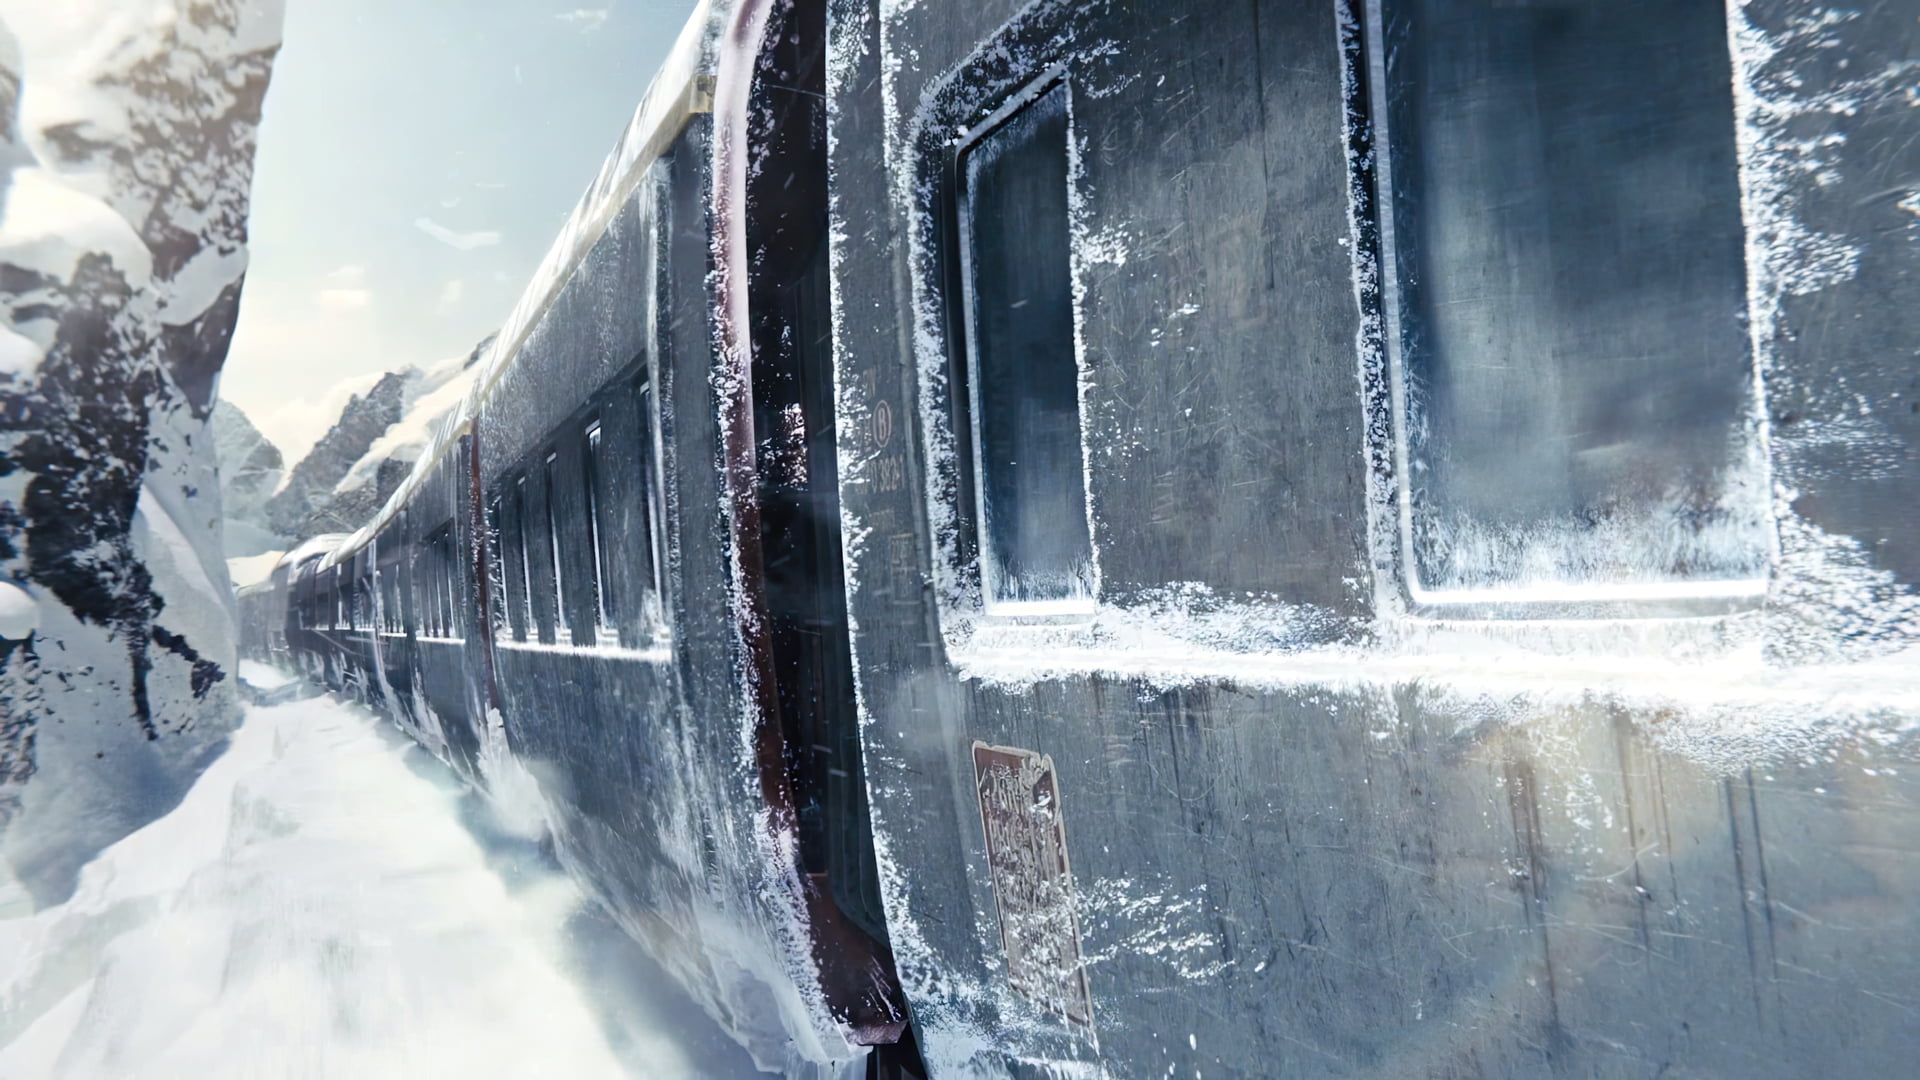 Snowpiercer 2013, movies, film stills, train